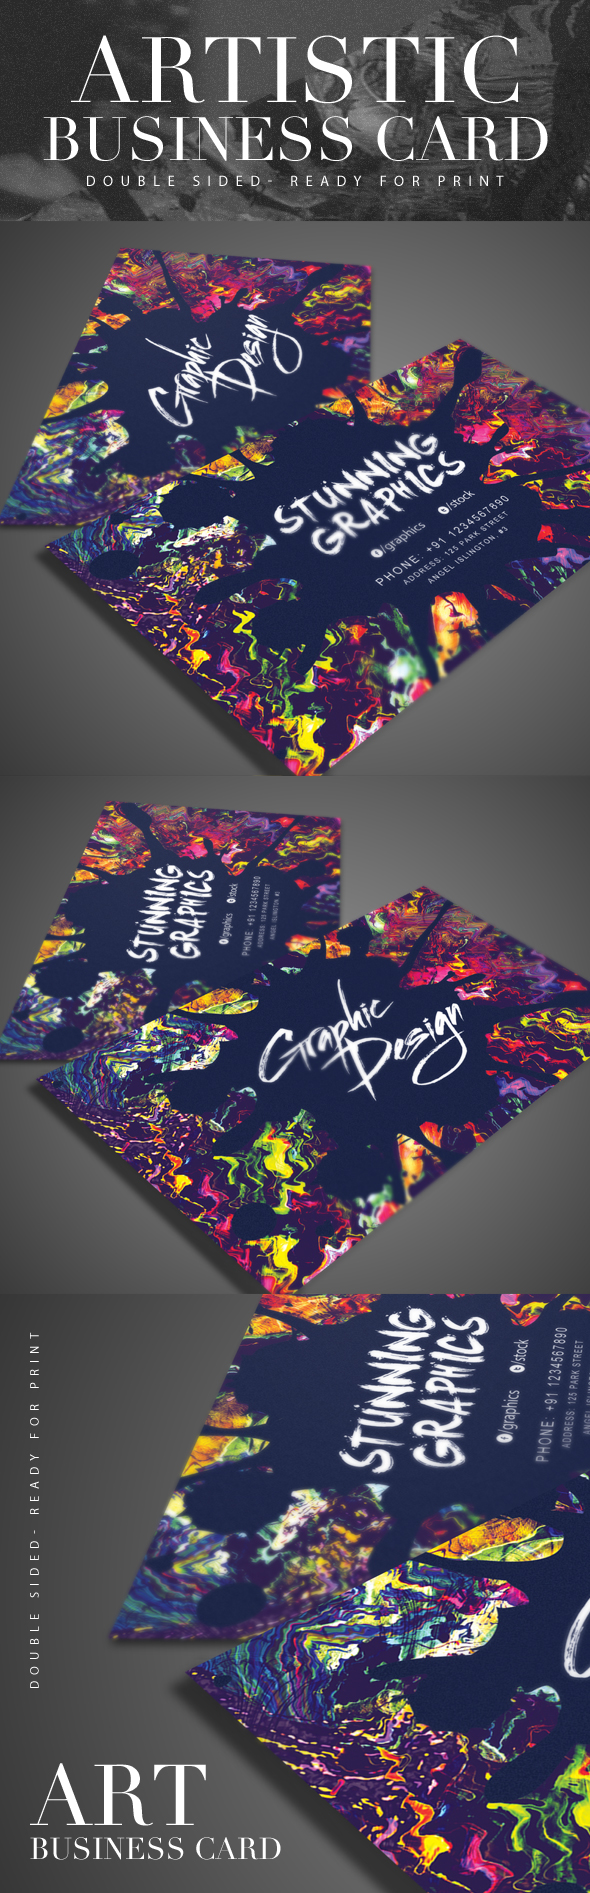 artistic artistic business business business card canvas colorful creative designer elegant graphic artistic Graphic Designer